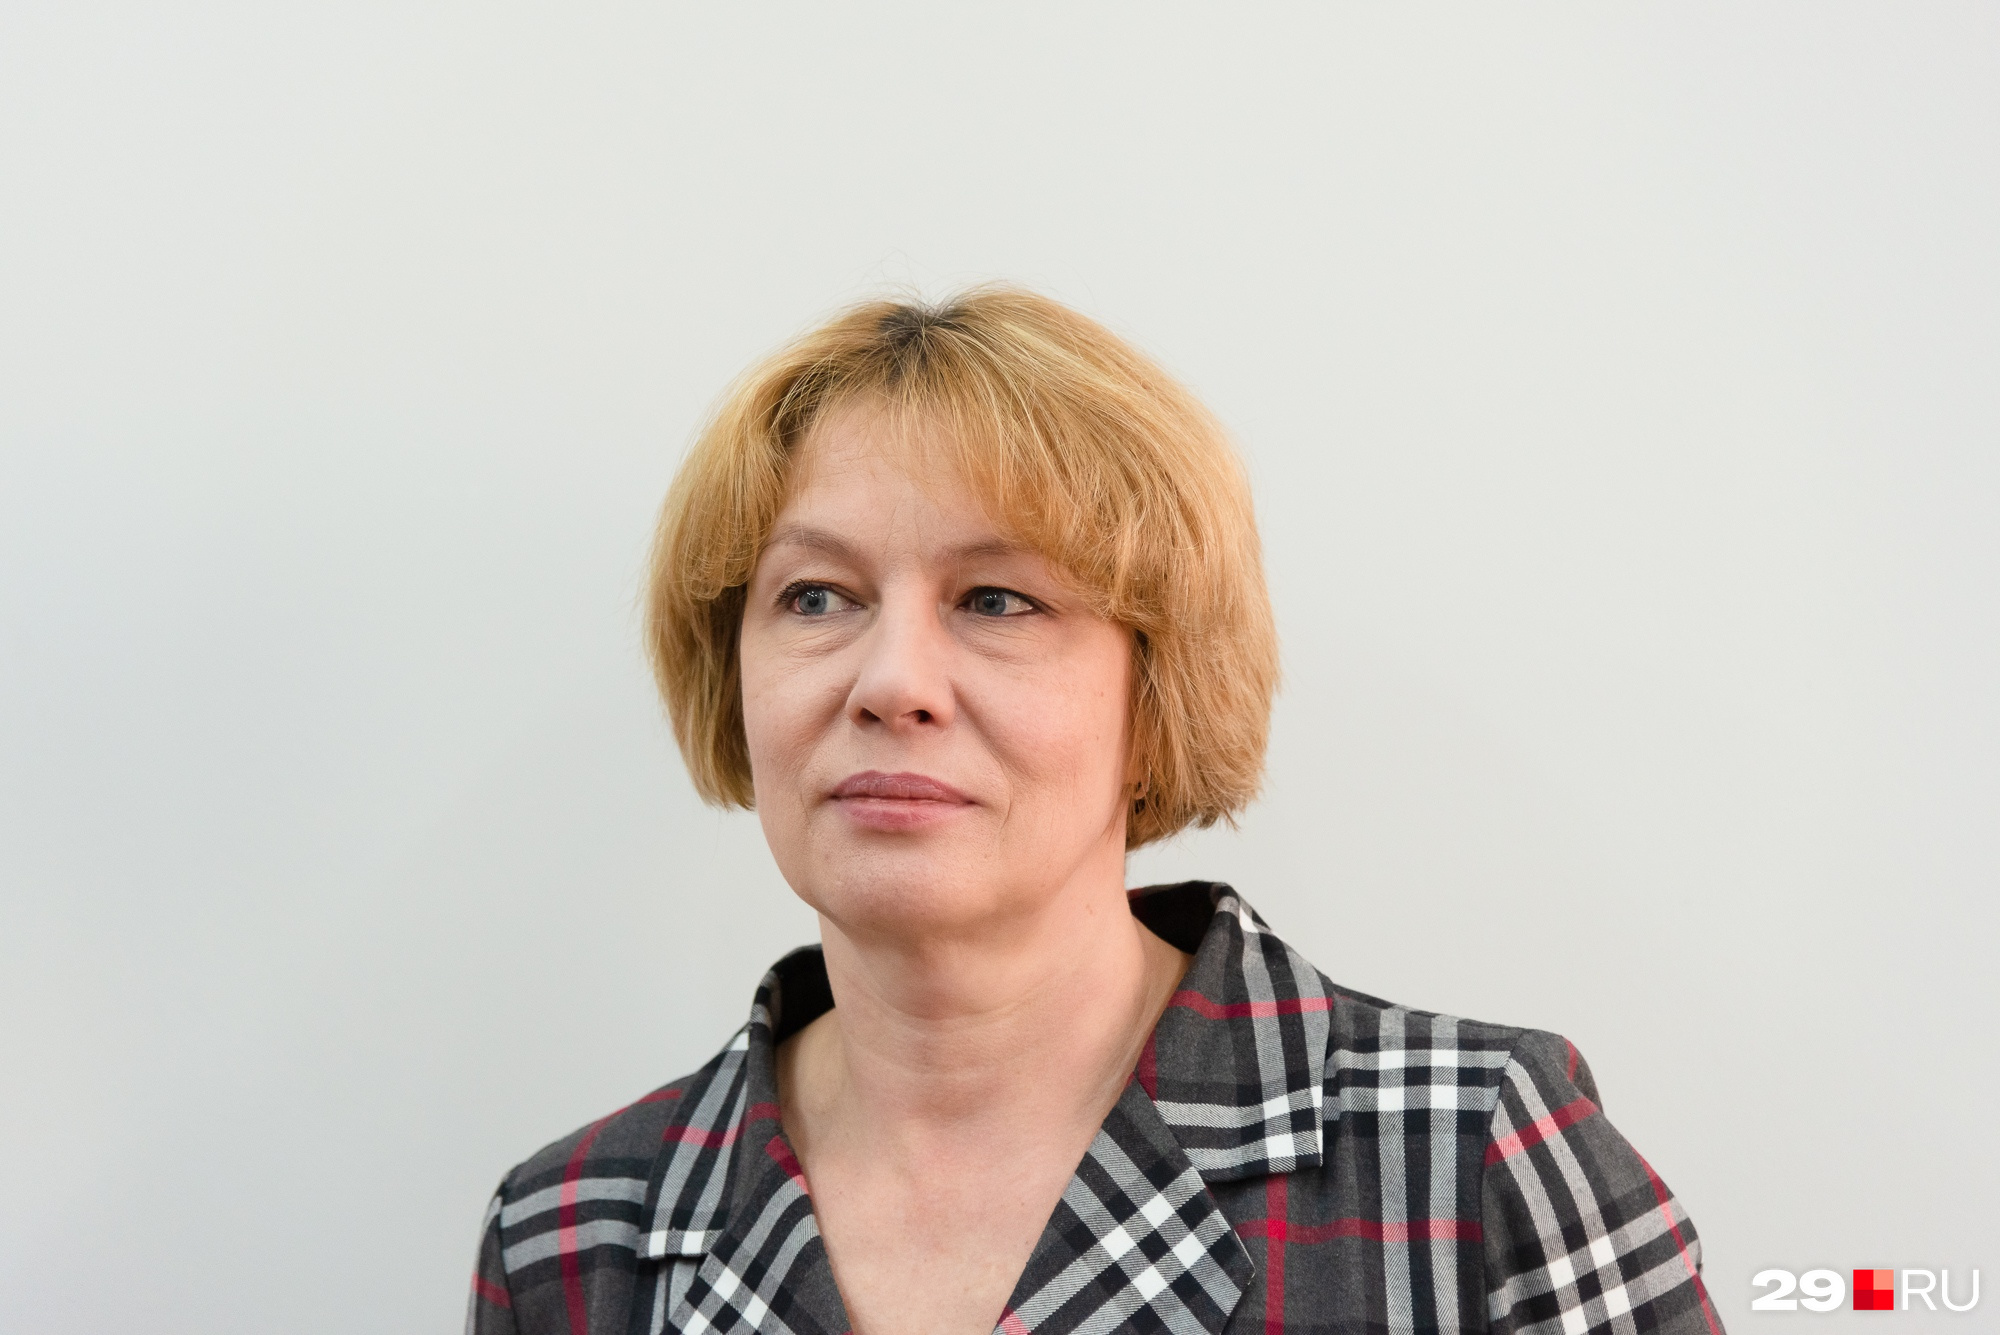 Татьяна Русинова, гость прямого эфира 29.RU и постоянный участник правительственных брифингов по короновирусу